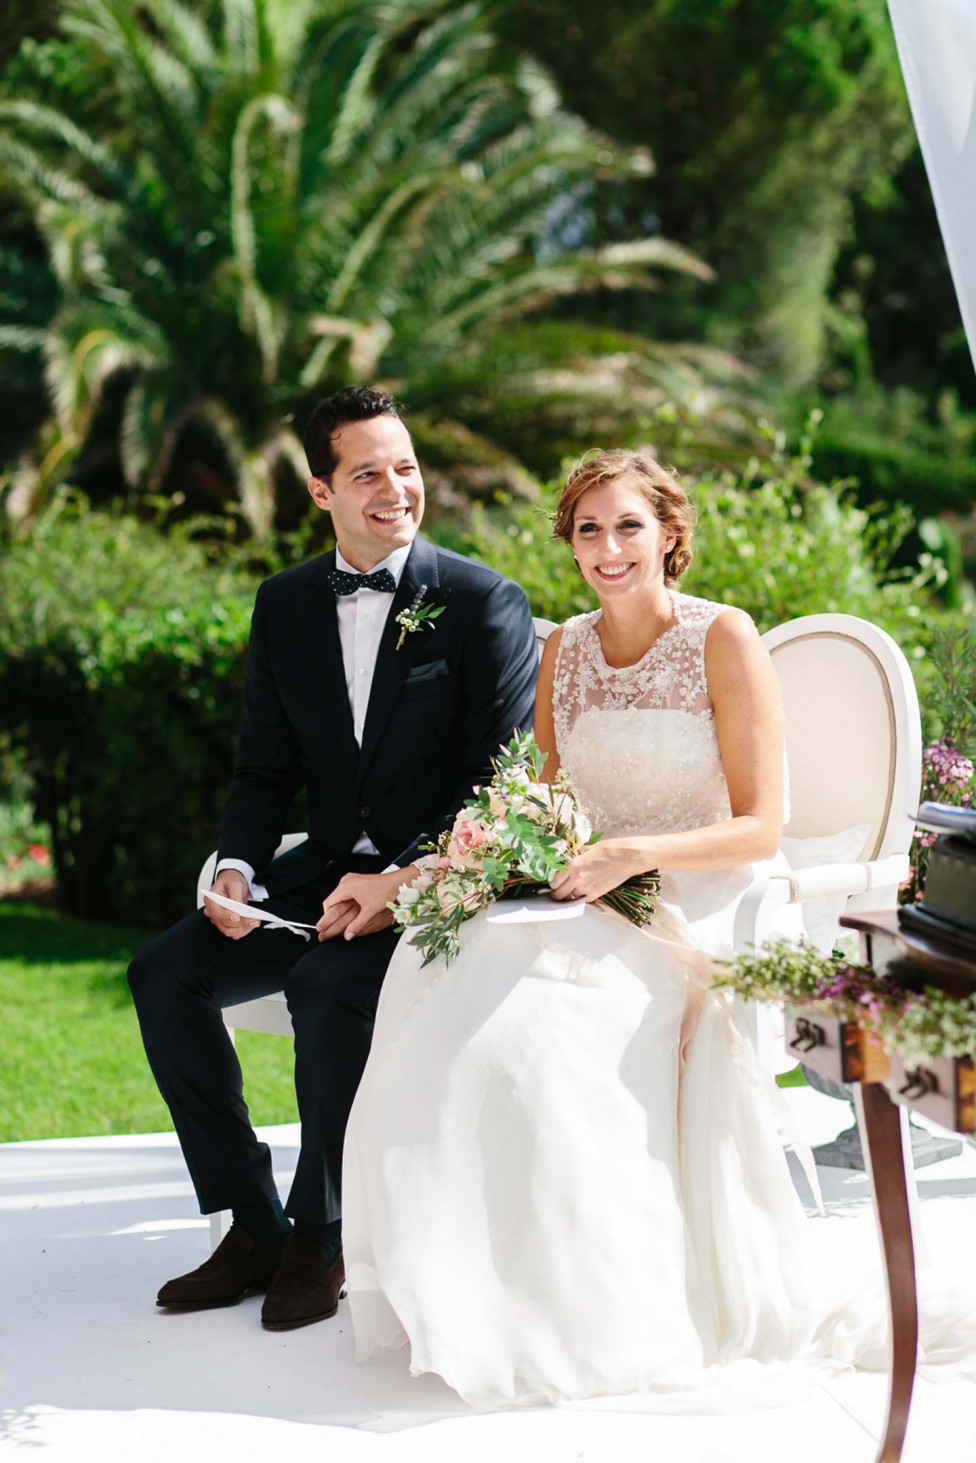 Hochzeitswahn - Braut und Bräutigam sitzen während ihrer Hochzeitszeremonie nebeneinander im Freien und lächeln. Die Braut hält einen Strauß zartrosa Blumen und beide sind elegant in Abendgarderobe gekleidet. Im Hintergrund ist üppiges Grün zu sehen.